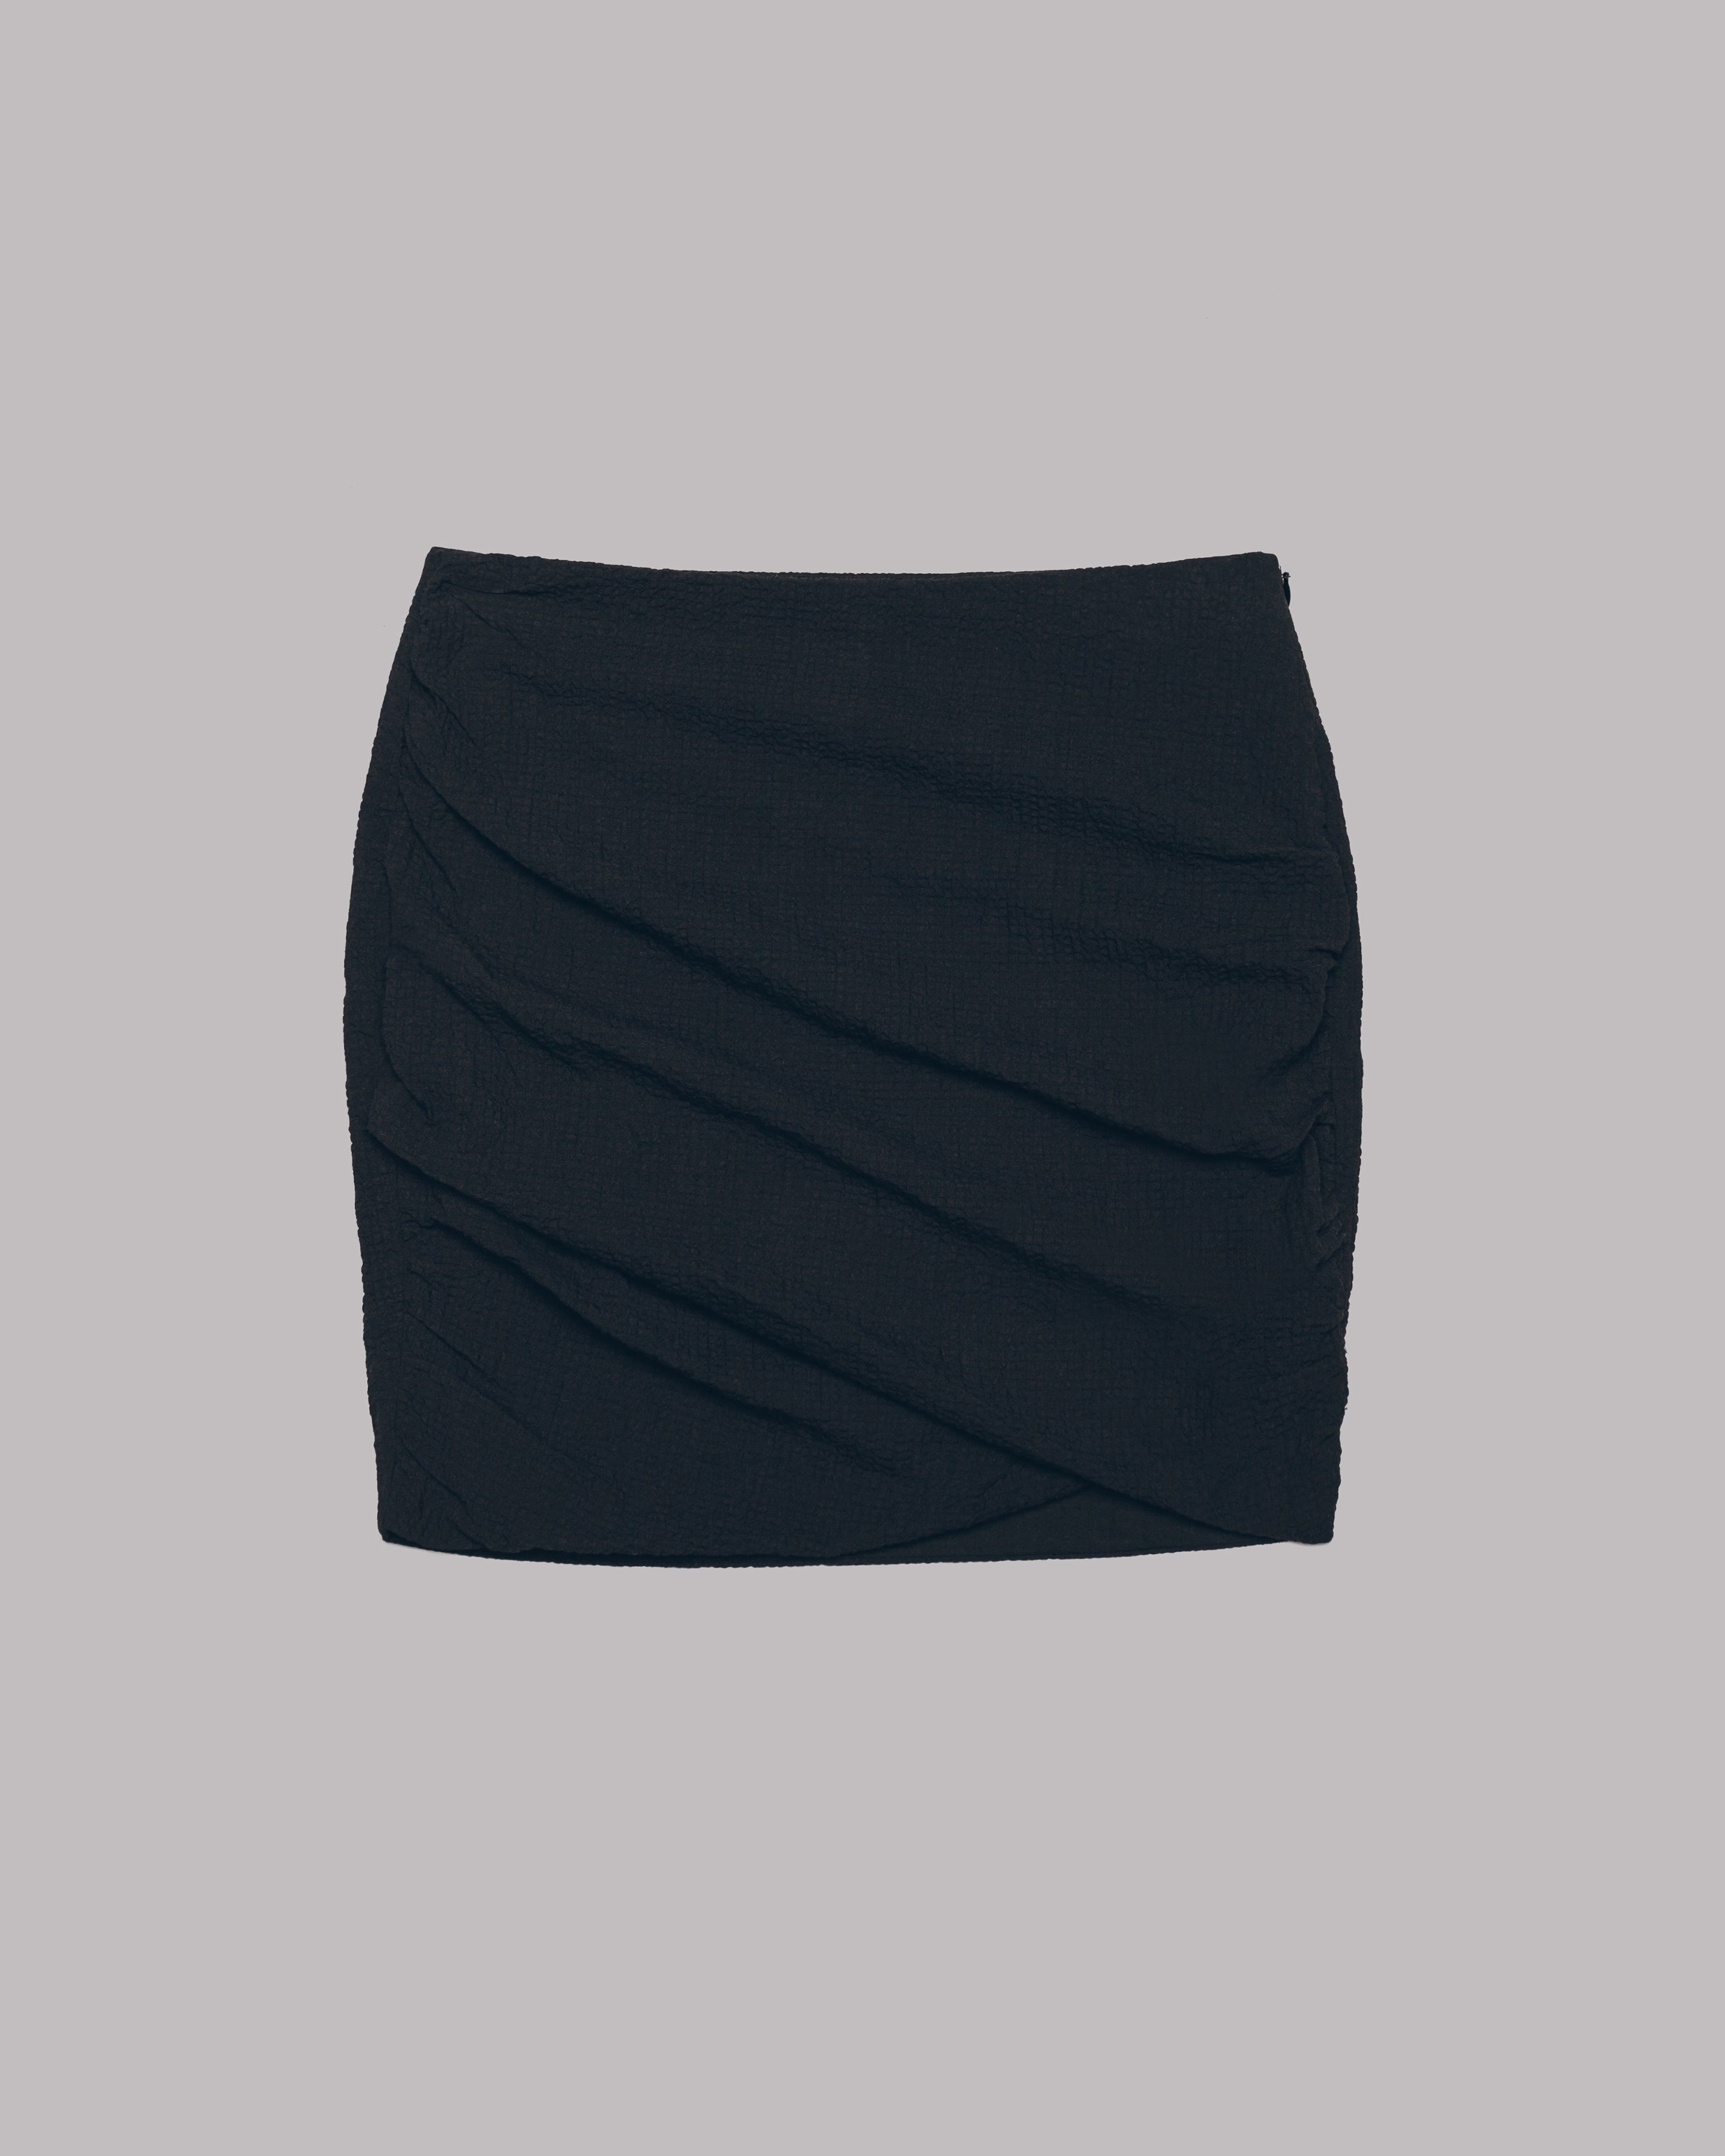 MIKUTA The Black Draped Skirt